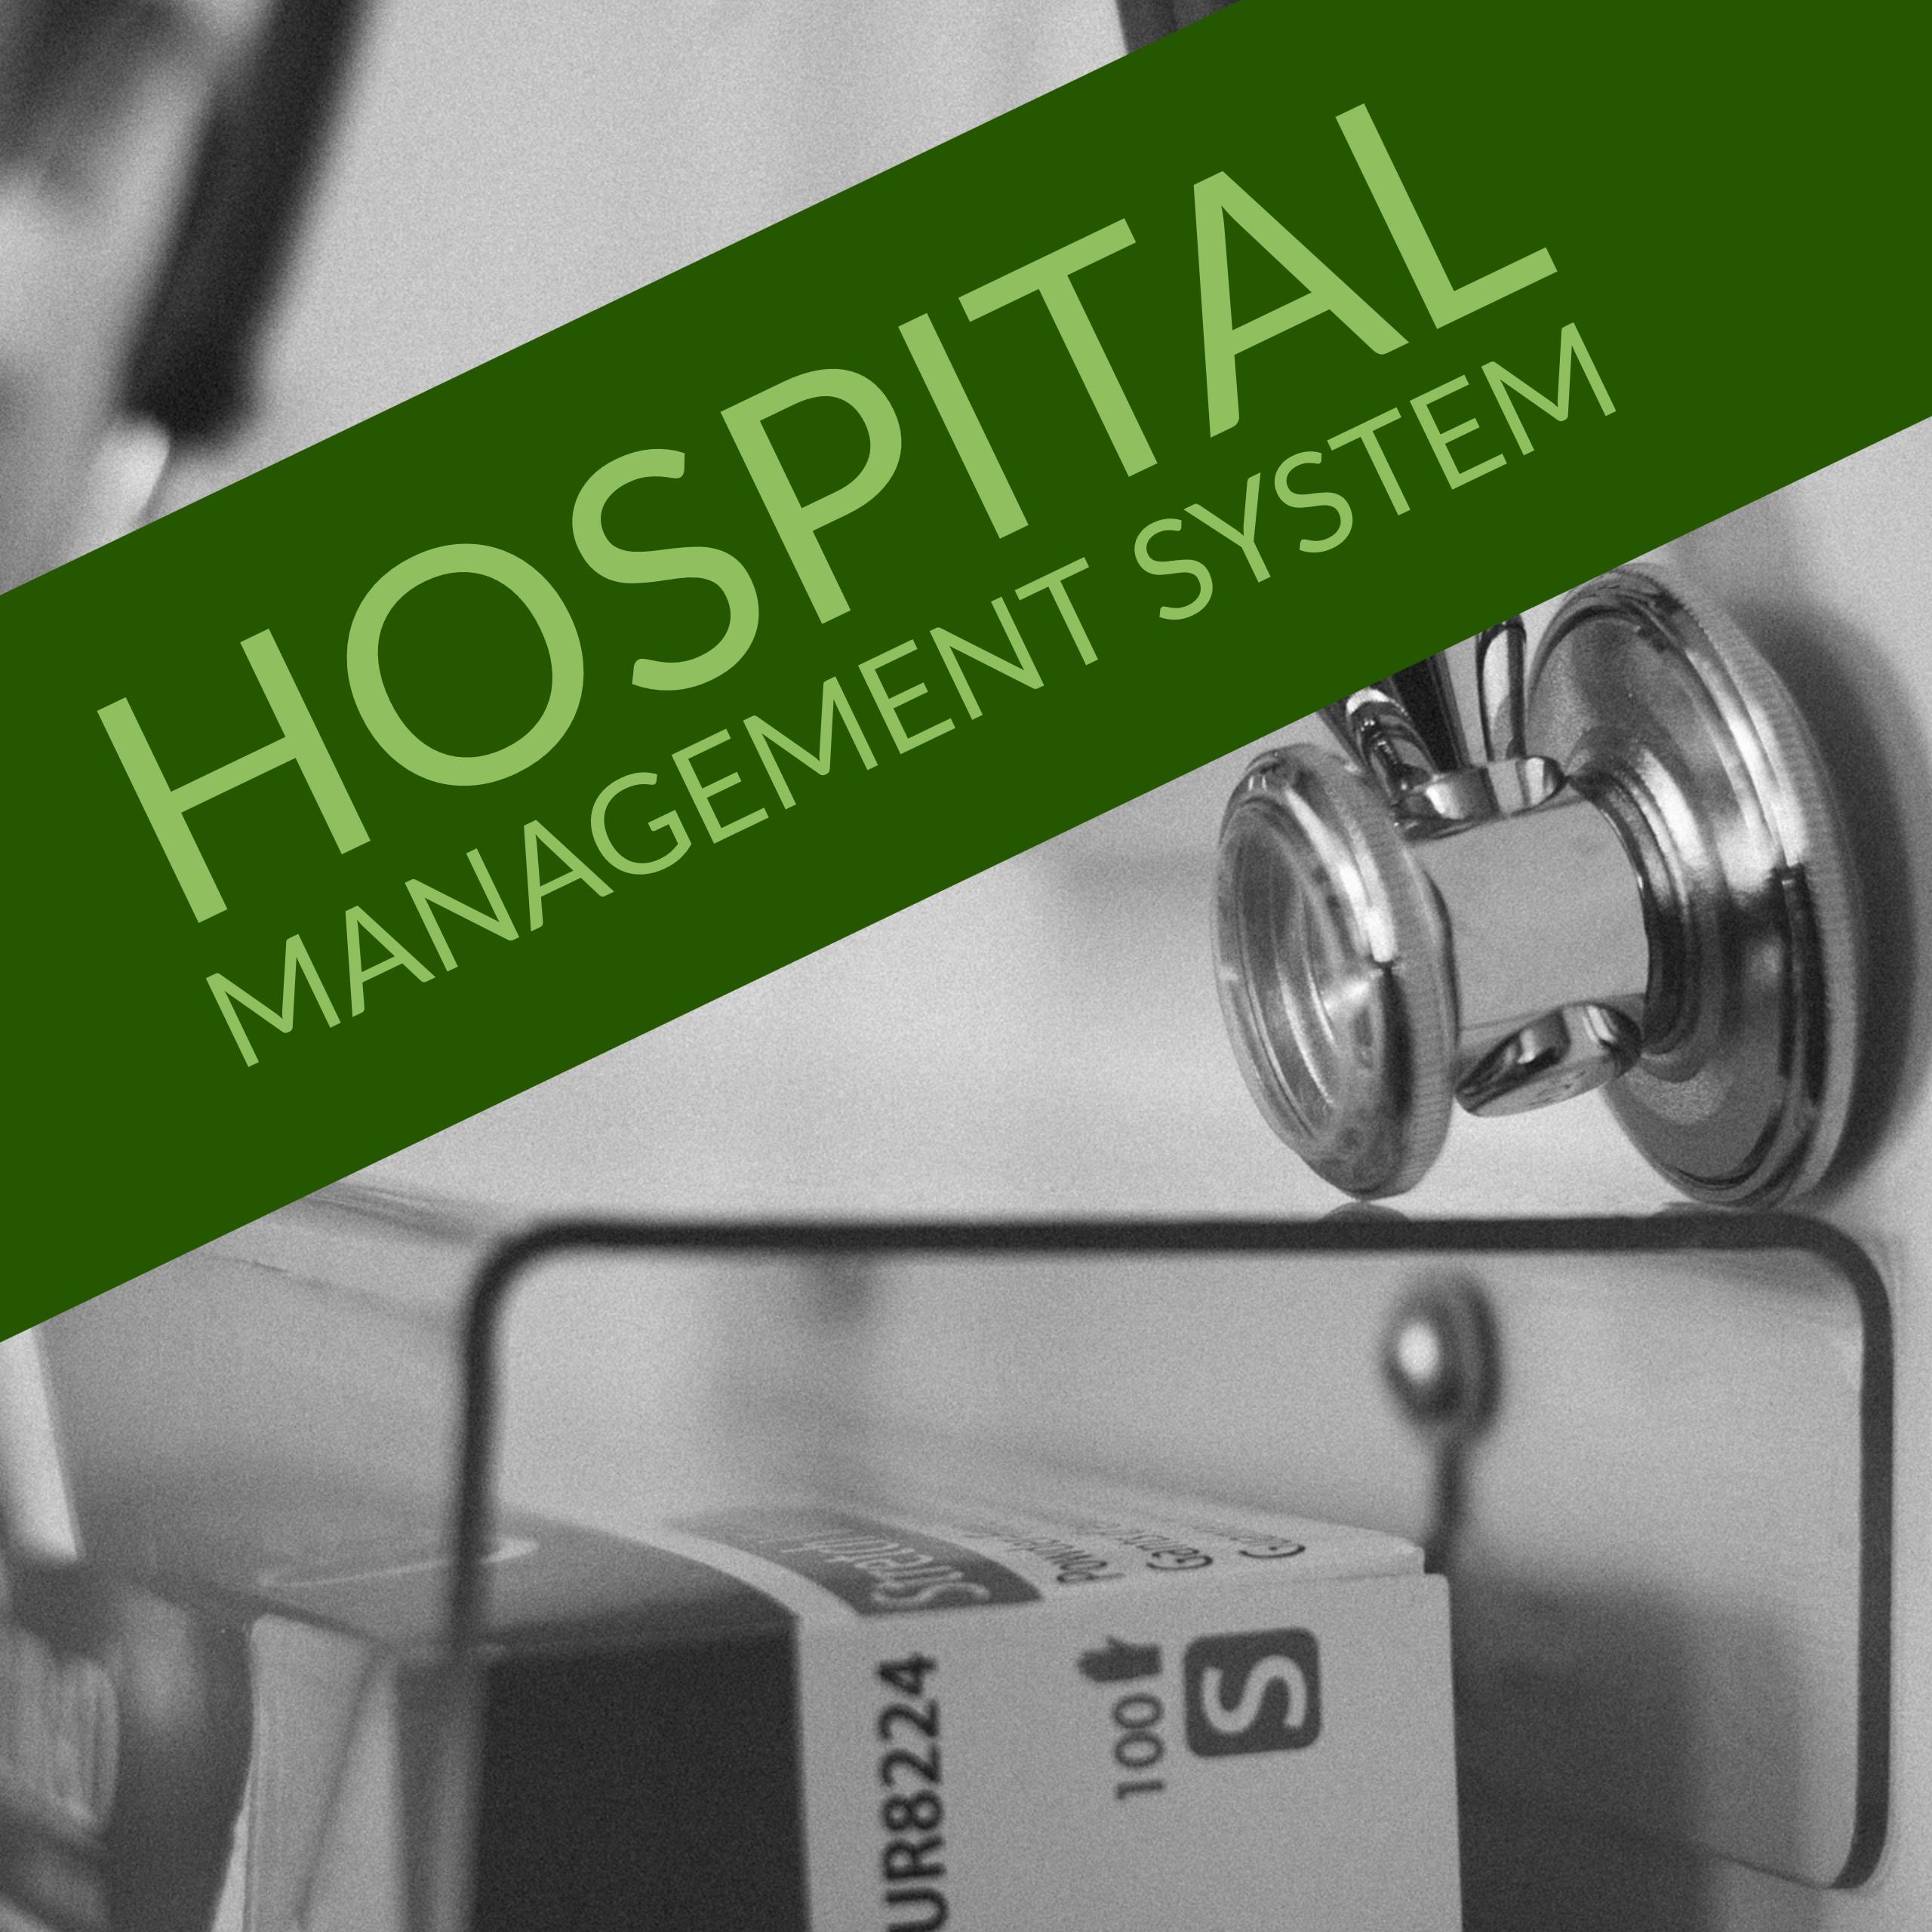 Hospital Management system